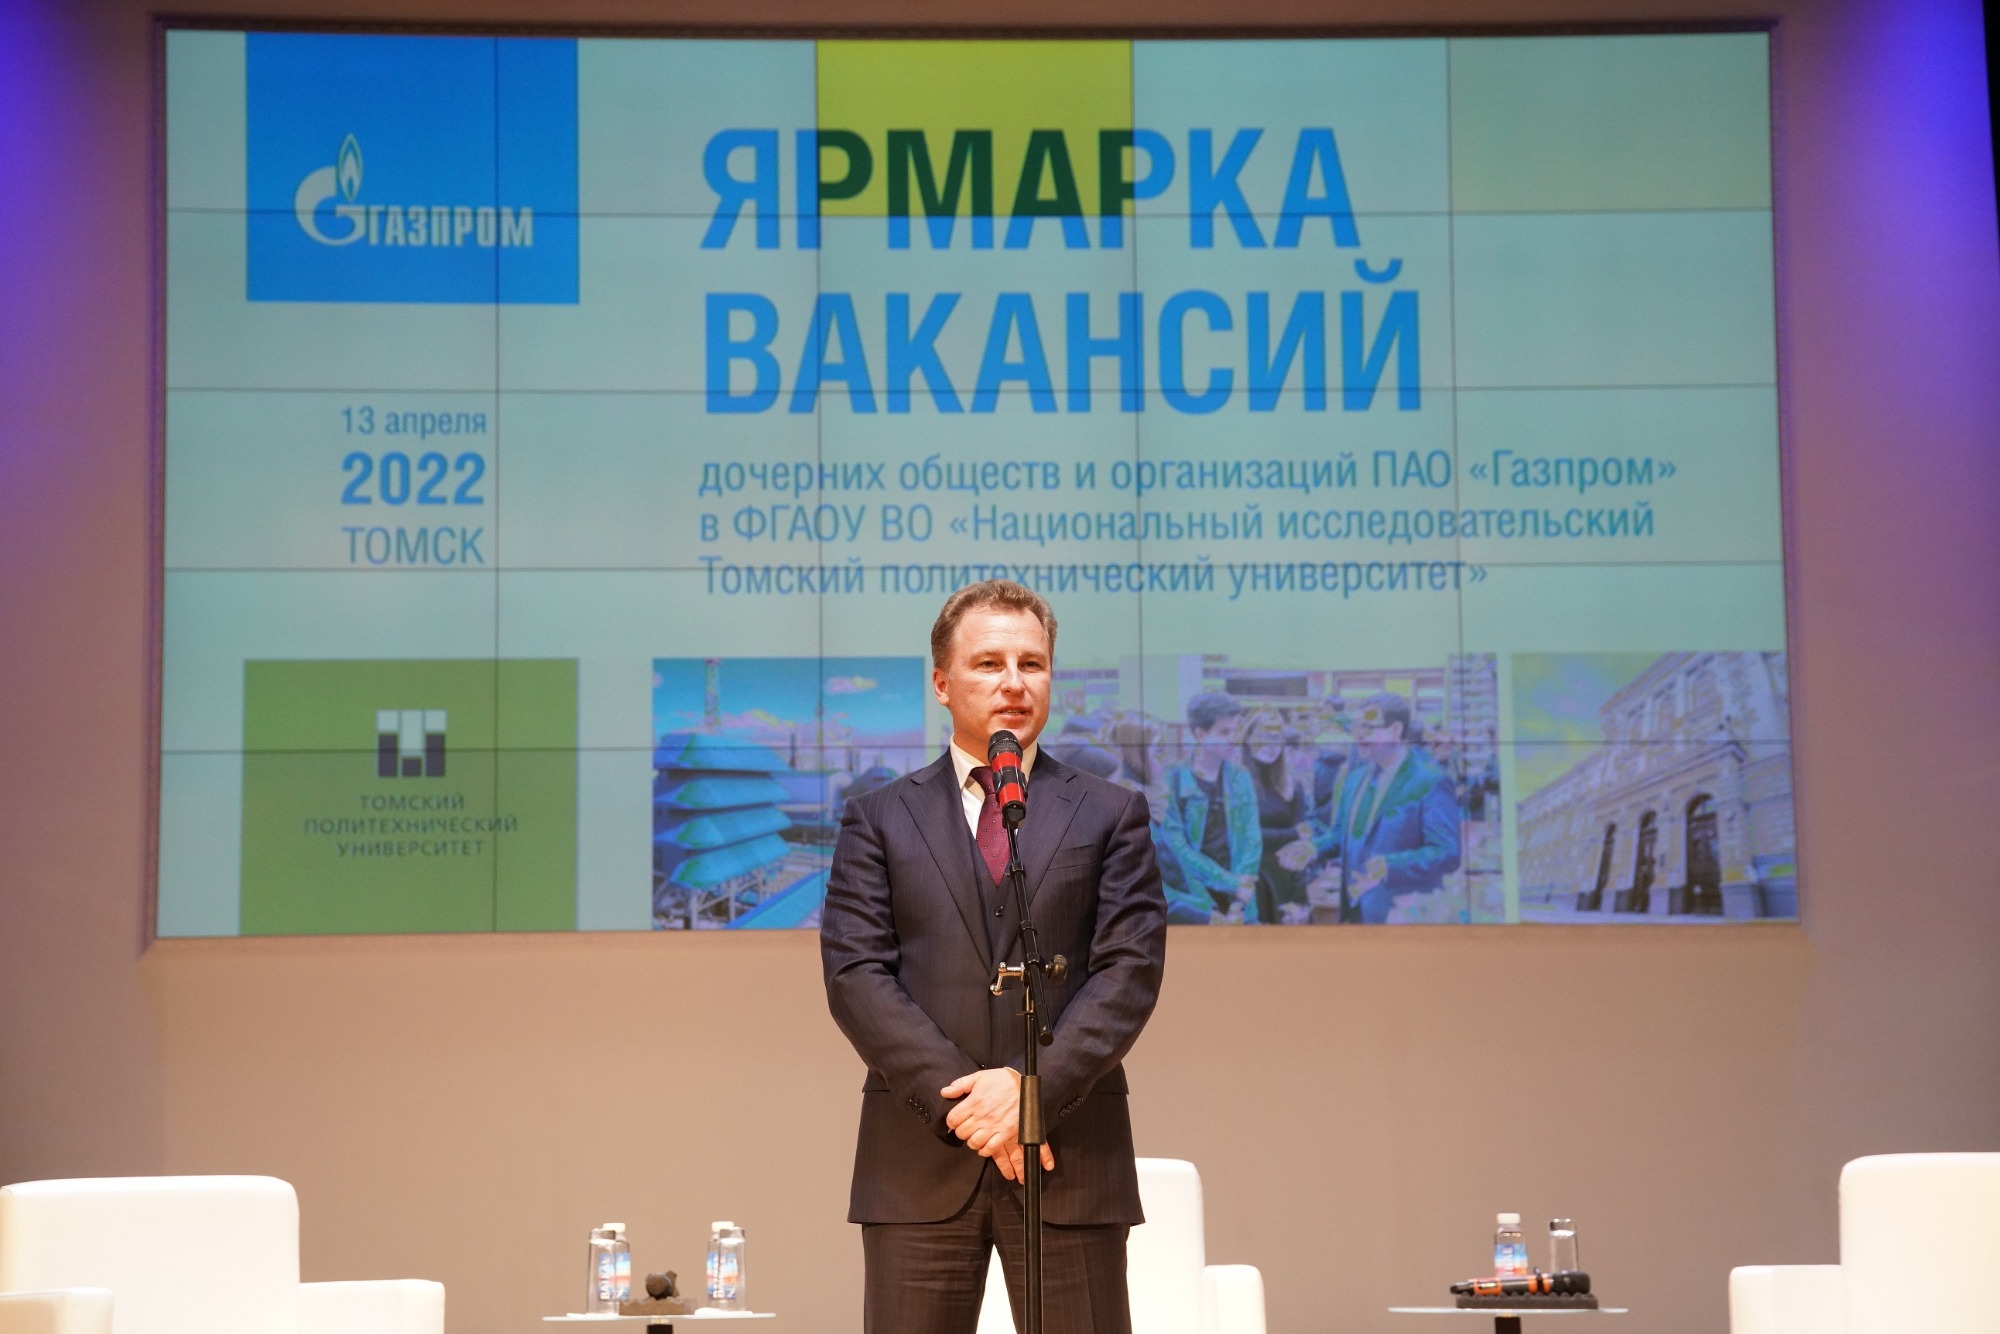 Стартовая площадка для работы в ПАО «Газпром»